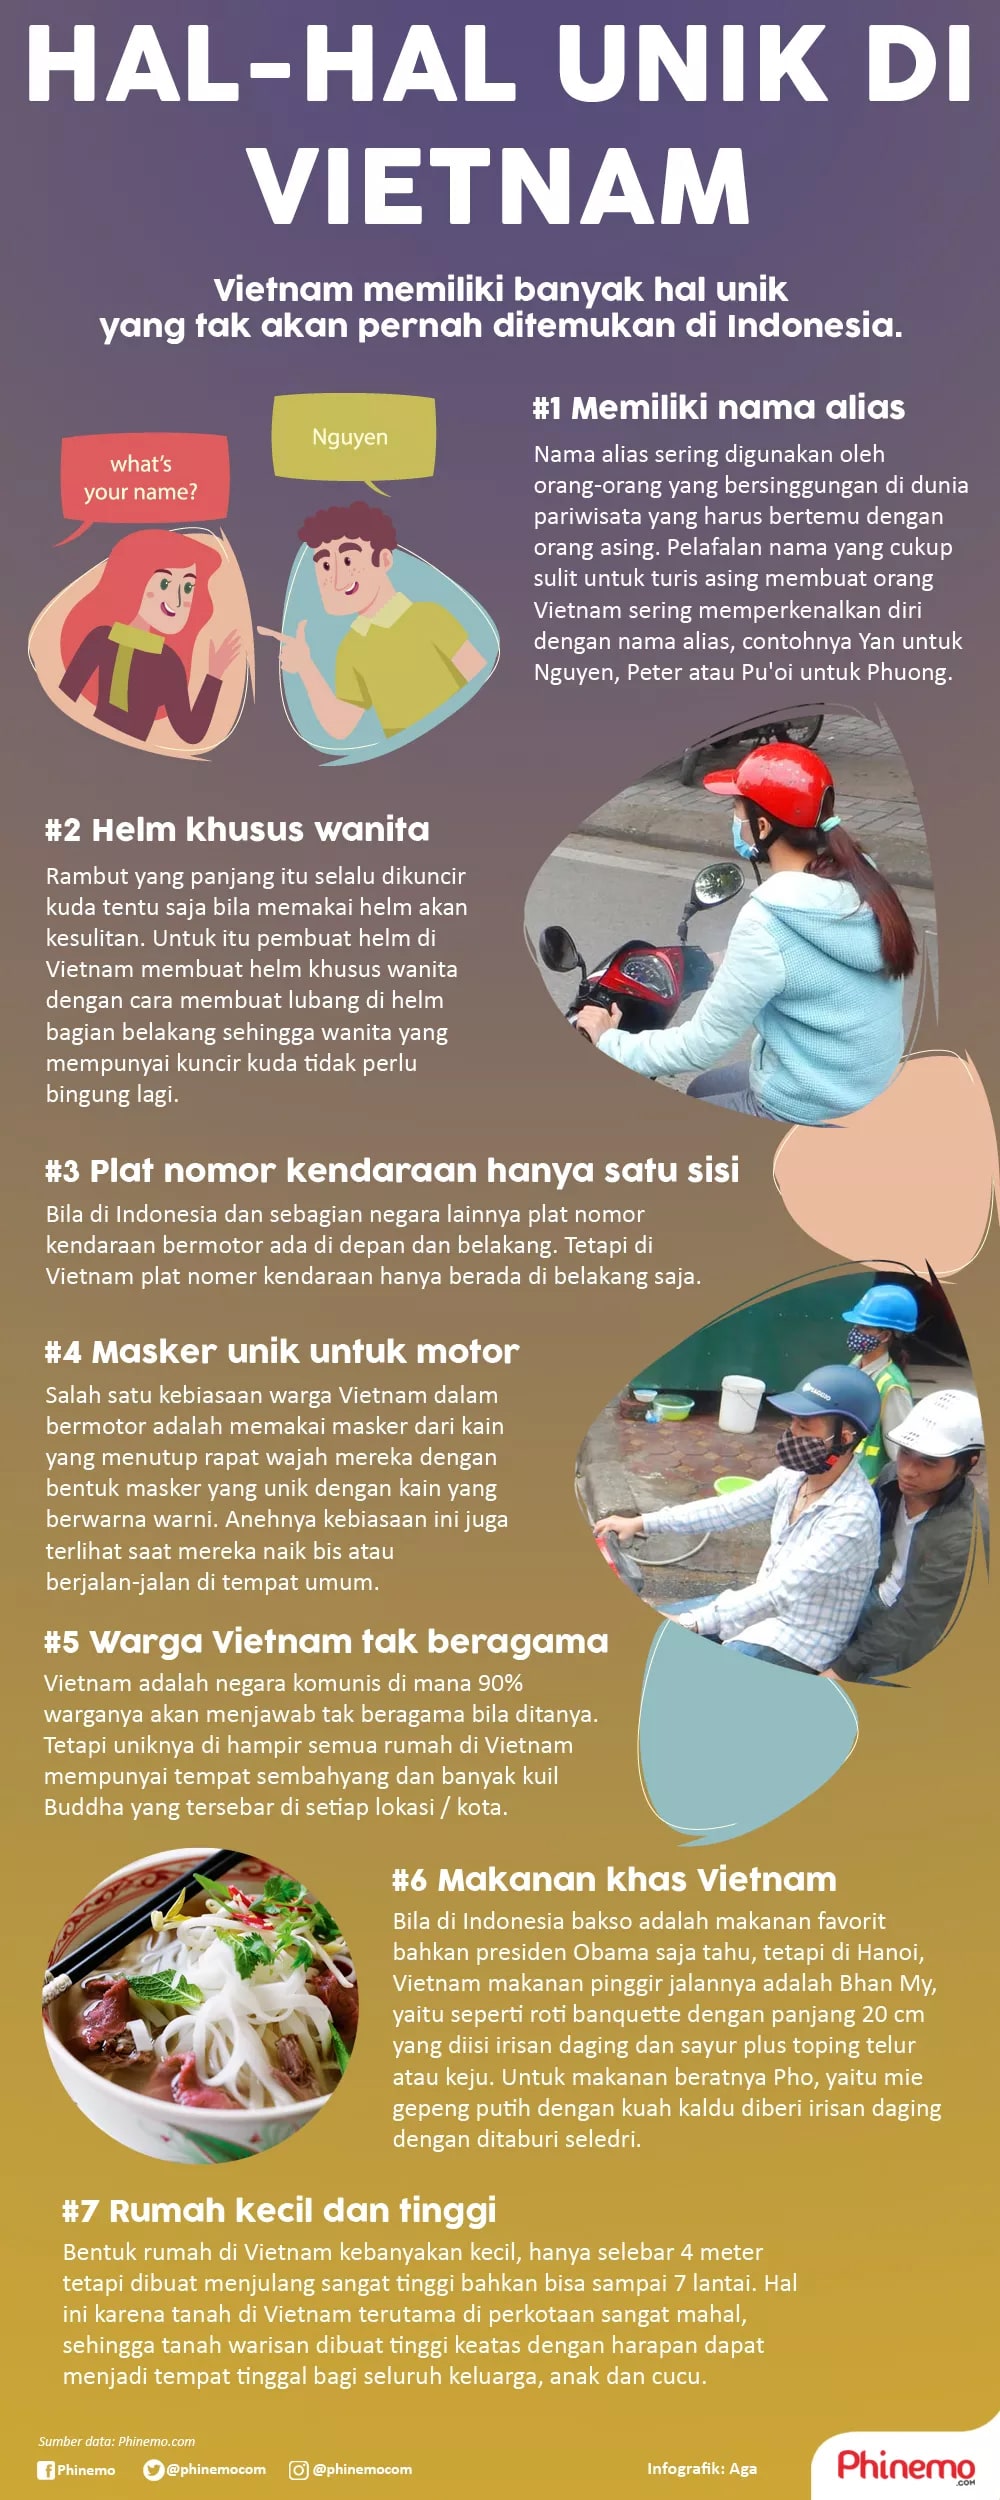 Infografik Hal-hal Unik di Vietnam yang Harus Anda Ketahui Sebelum Traveling ke Sana. 